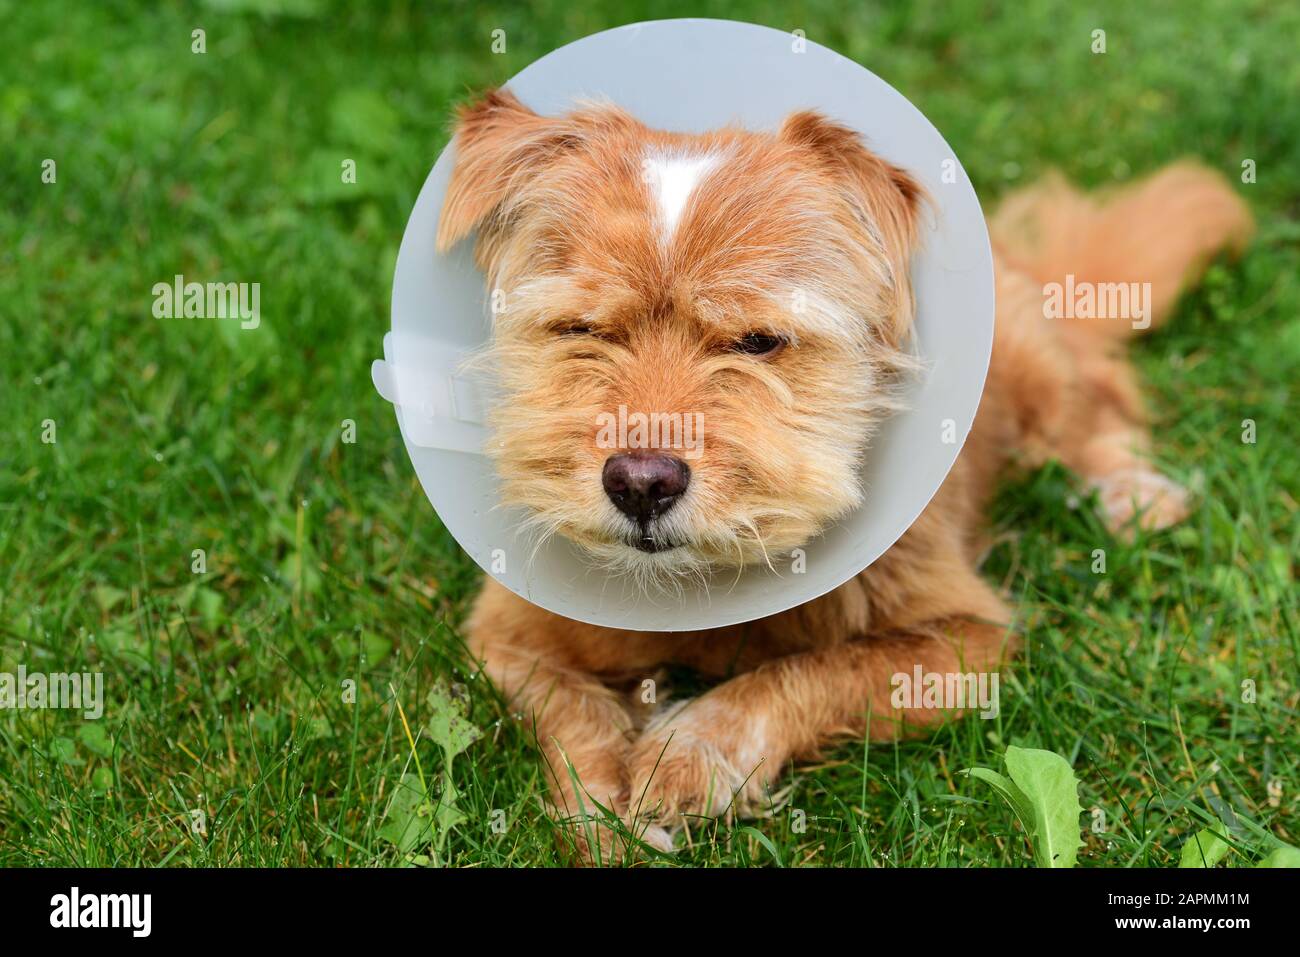 Ein kleiner braun behaarter süßer Hund sitzt draußen auf der Wiese und hat einen weißen Plastikrill um den Hals, weil er medizinisch behandelt wurde Stockfoto